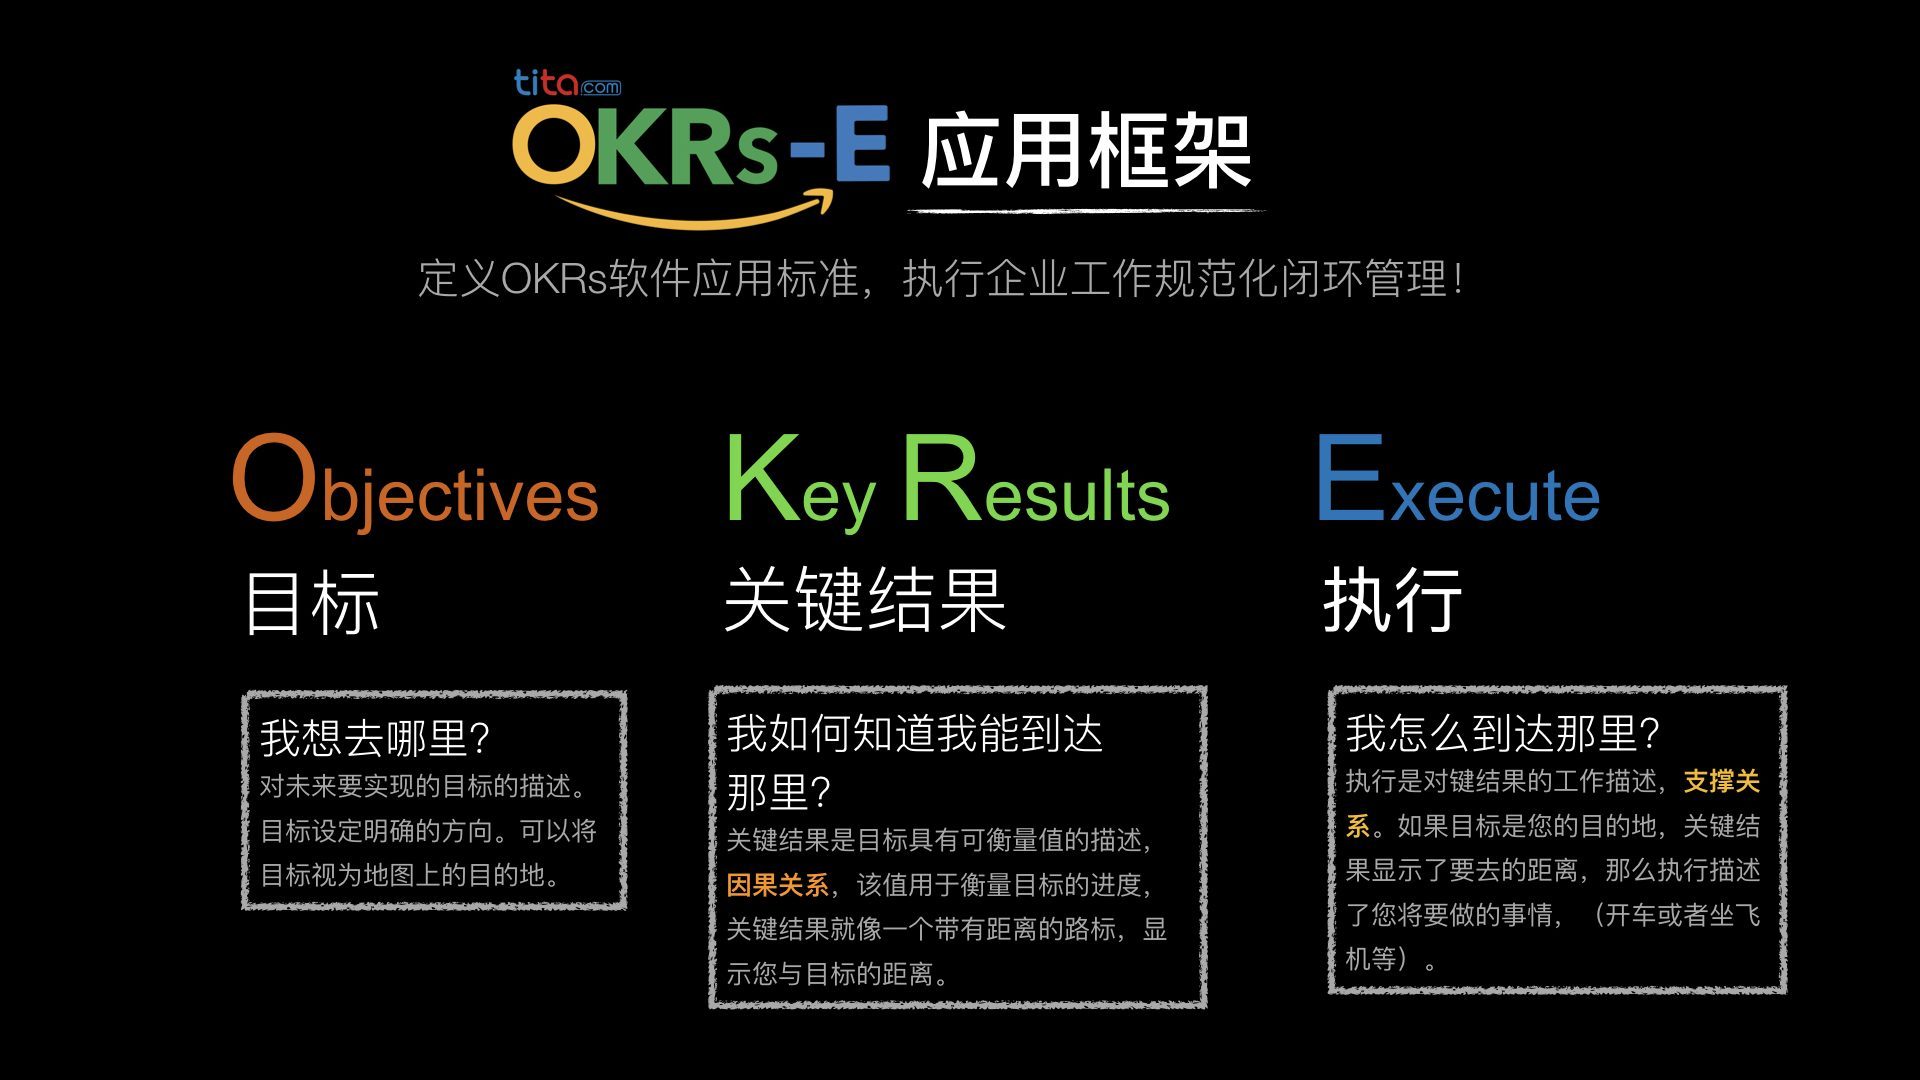 Tita OKR-E应用框架